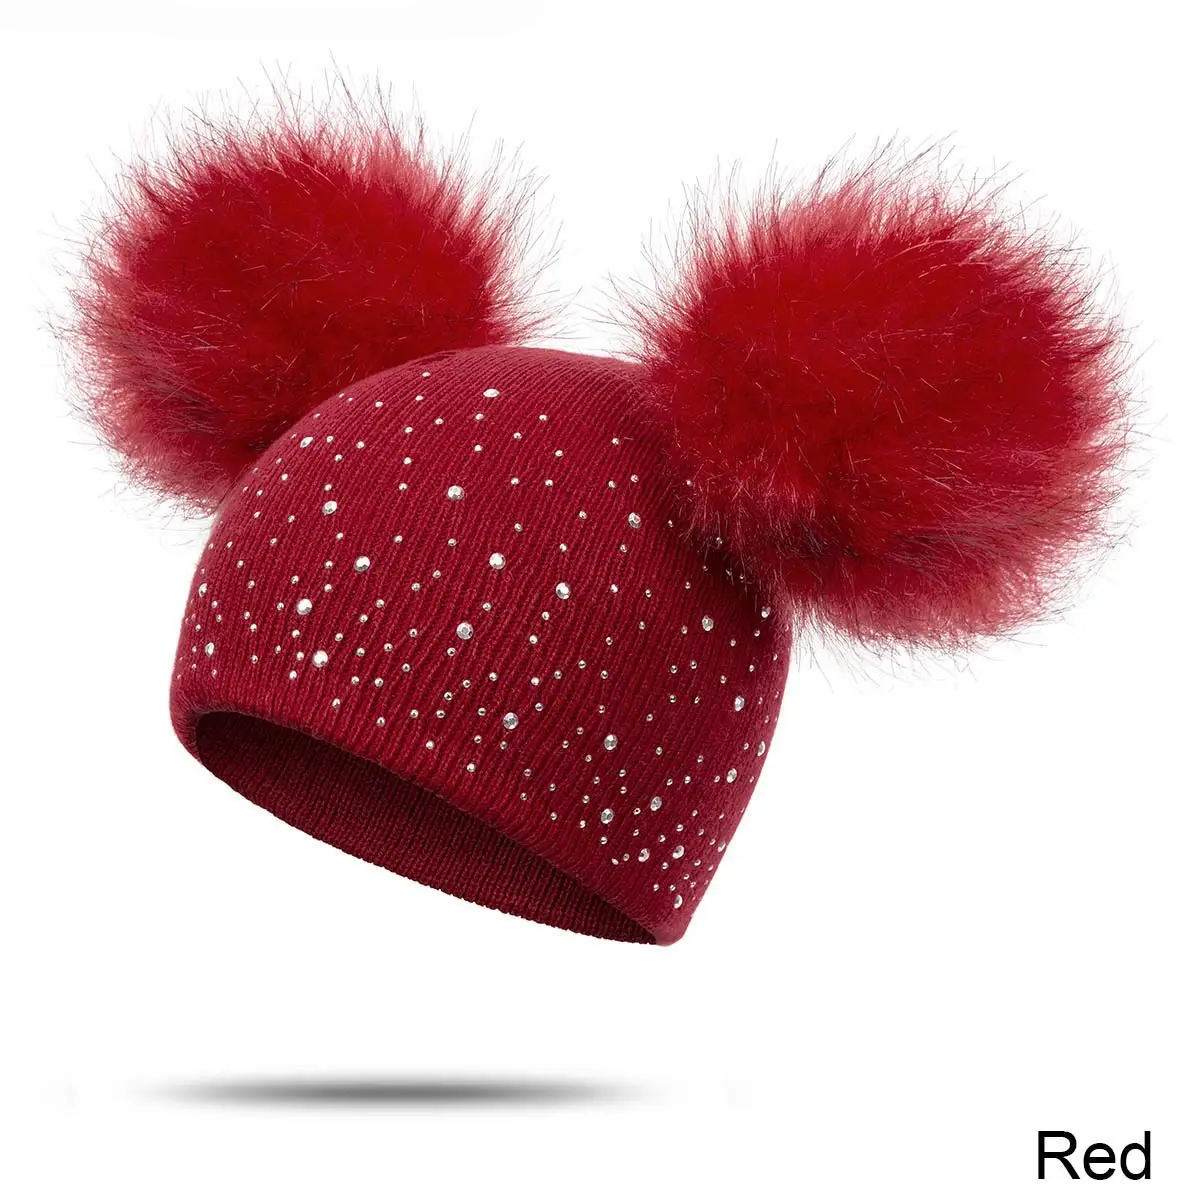 Evrfelan/милые детские шапки из 2 меховых шариков, вязаные зимние шапки, шапочки для девочек и мальчиков с помпонами из страз, зимняя утепленная шапка - Color: red